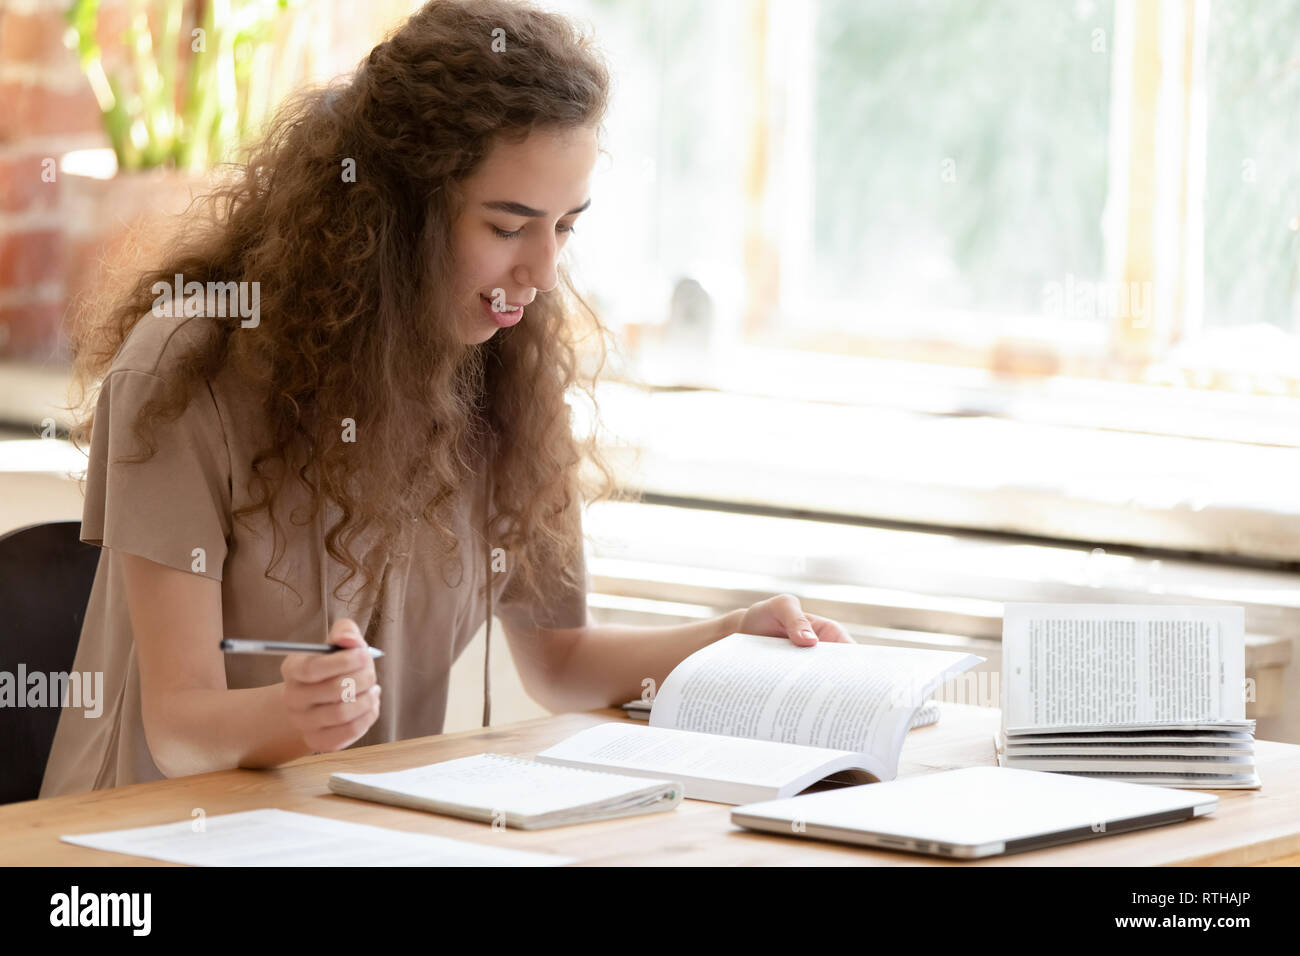 Jugendlich Mädchen Student Studium lesen Lehrbücher lernen Notizen zu machen Stockfoto